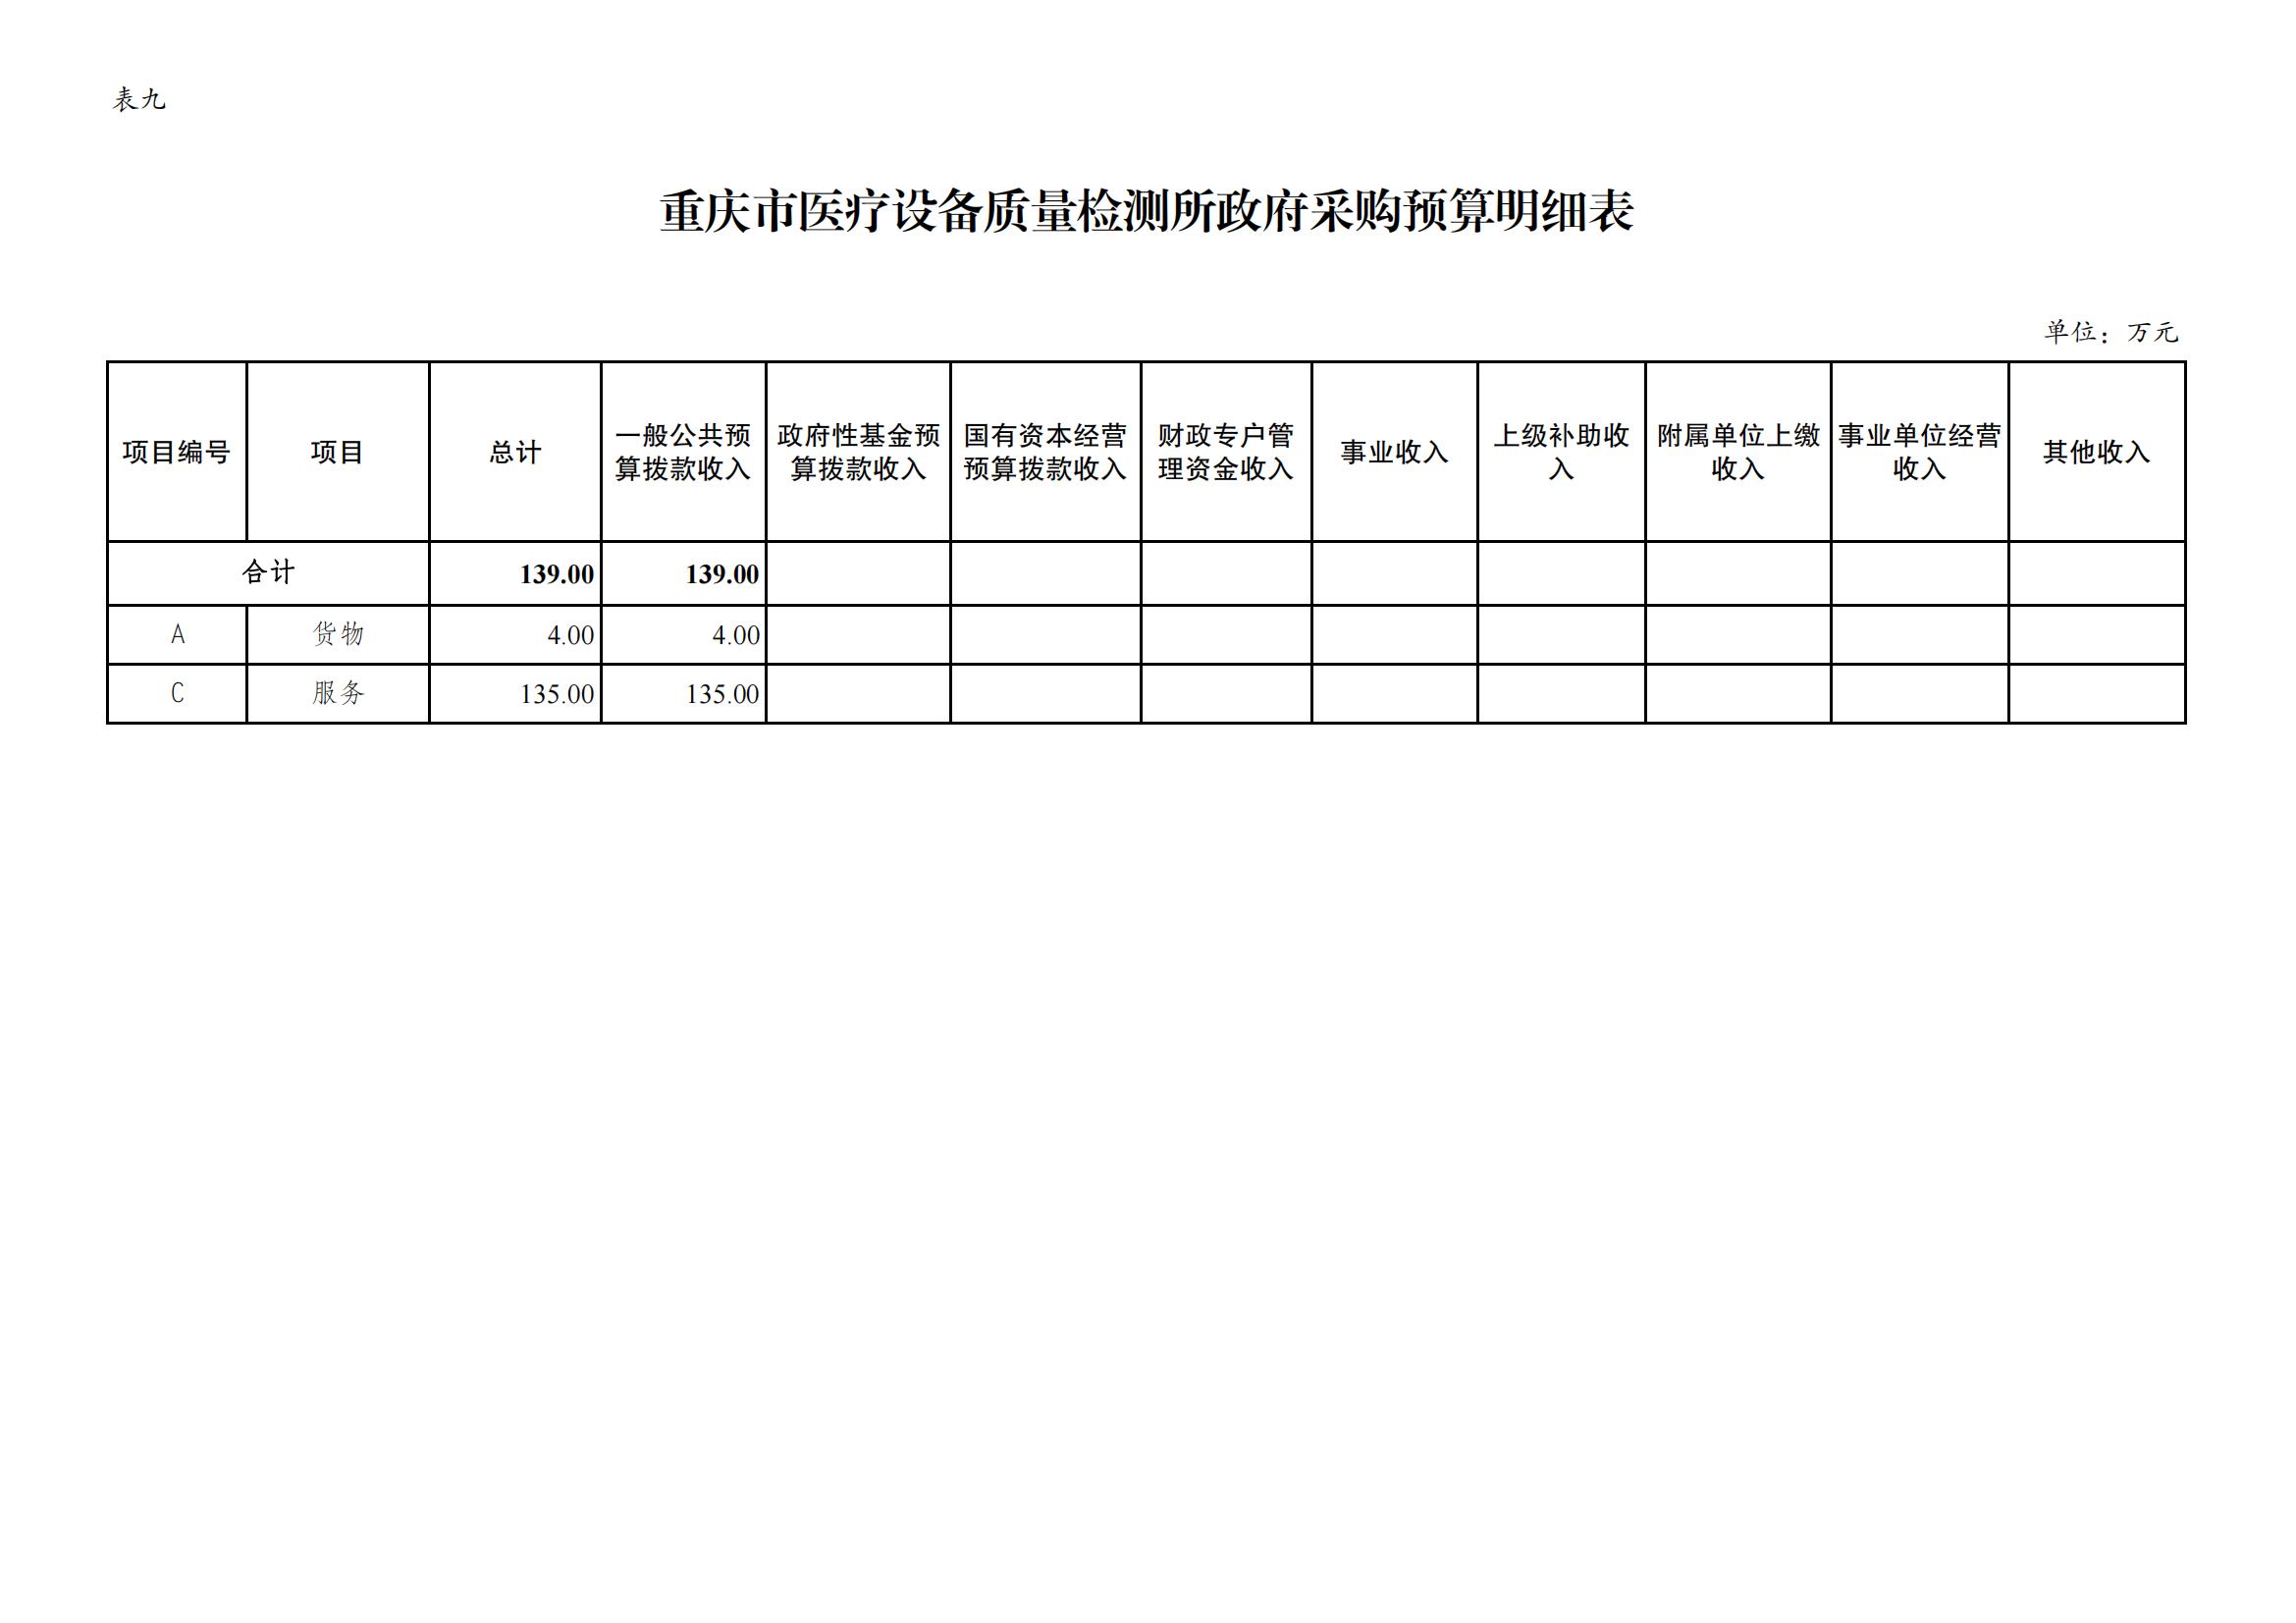 重庆市医疗设备质量检测所2024年单位预算情况说明_12.jpg